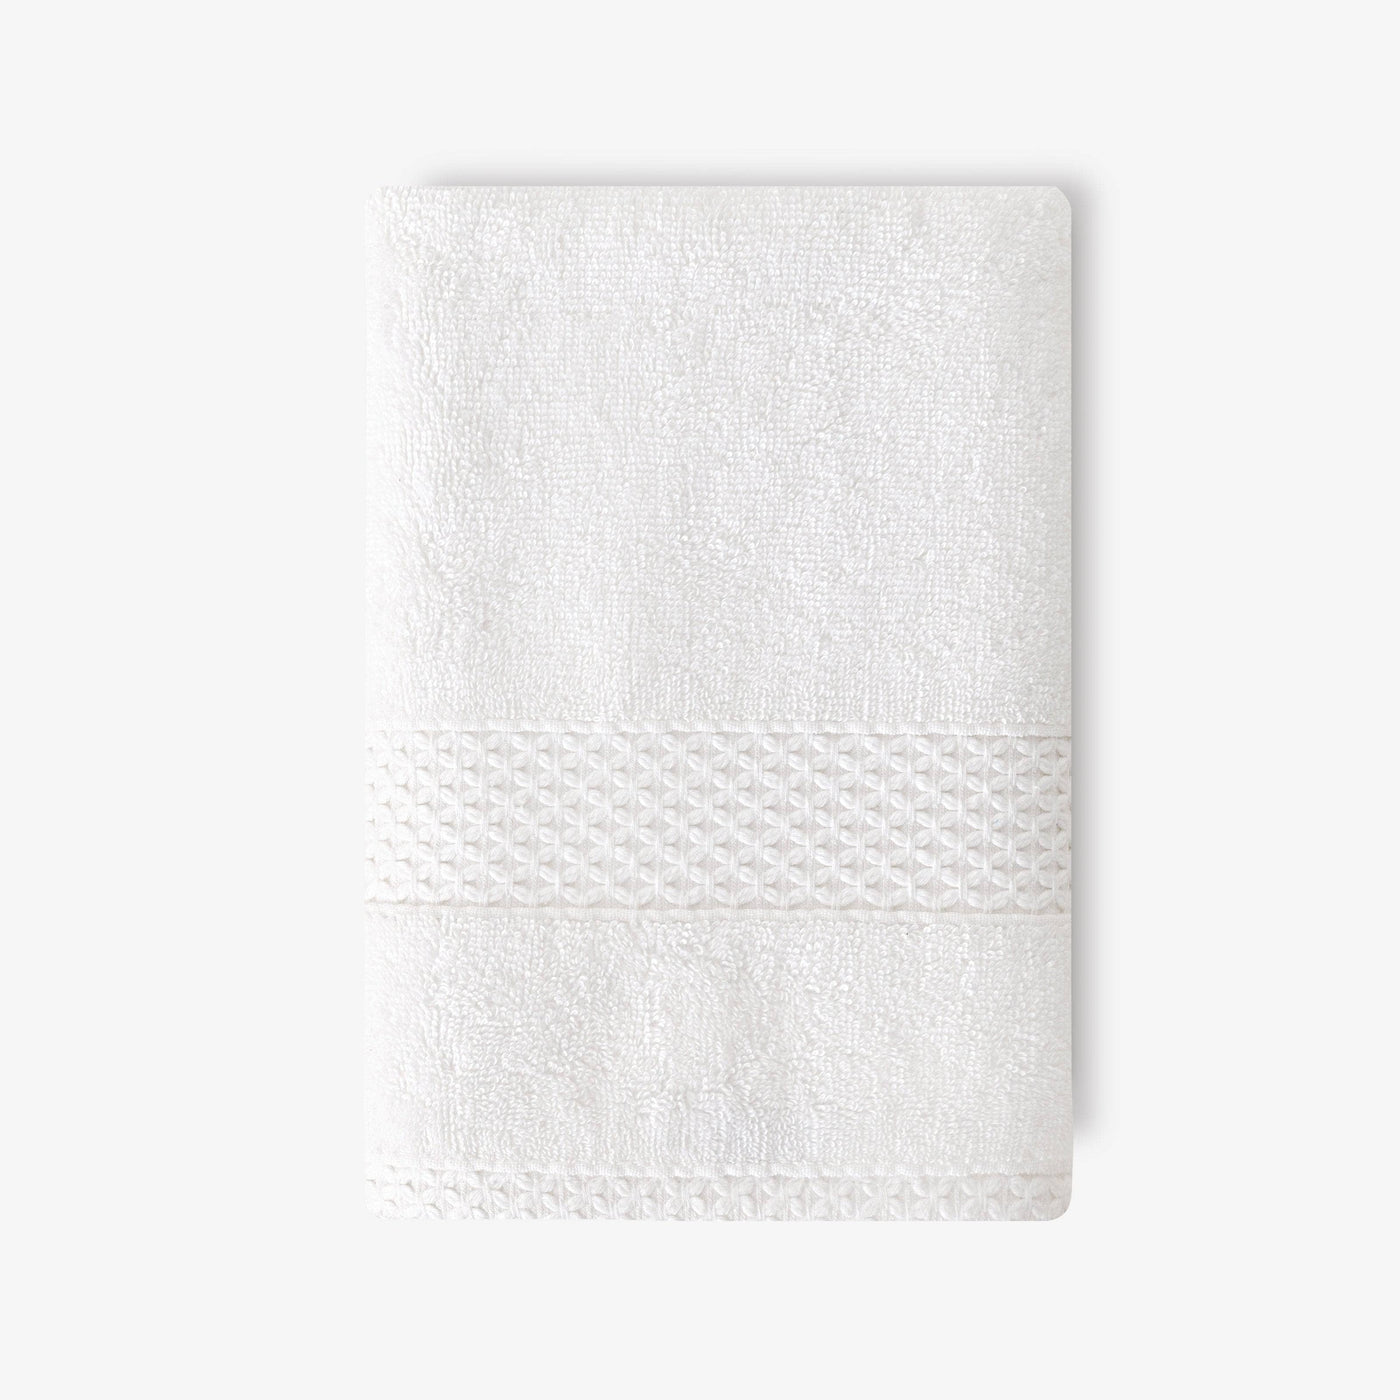 Aqua Fibro Set of 2 Extra Soft 100% Turkish Cotton Hand Towels, White Hand Towels sazy.com